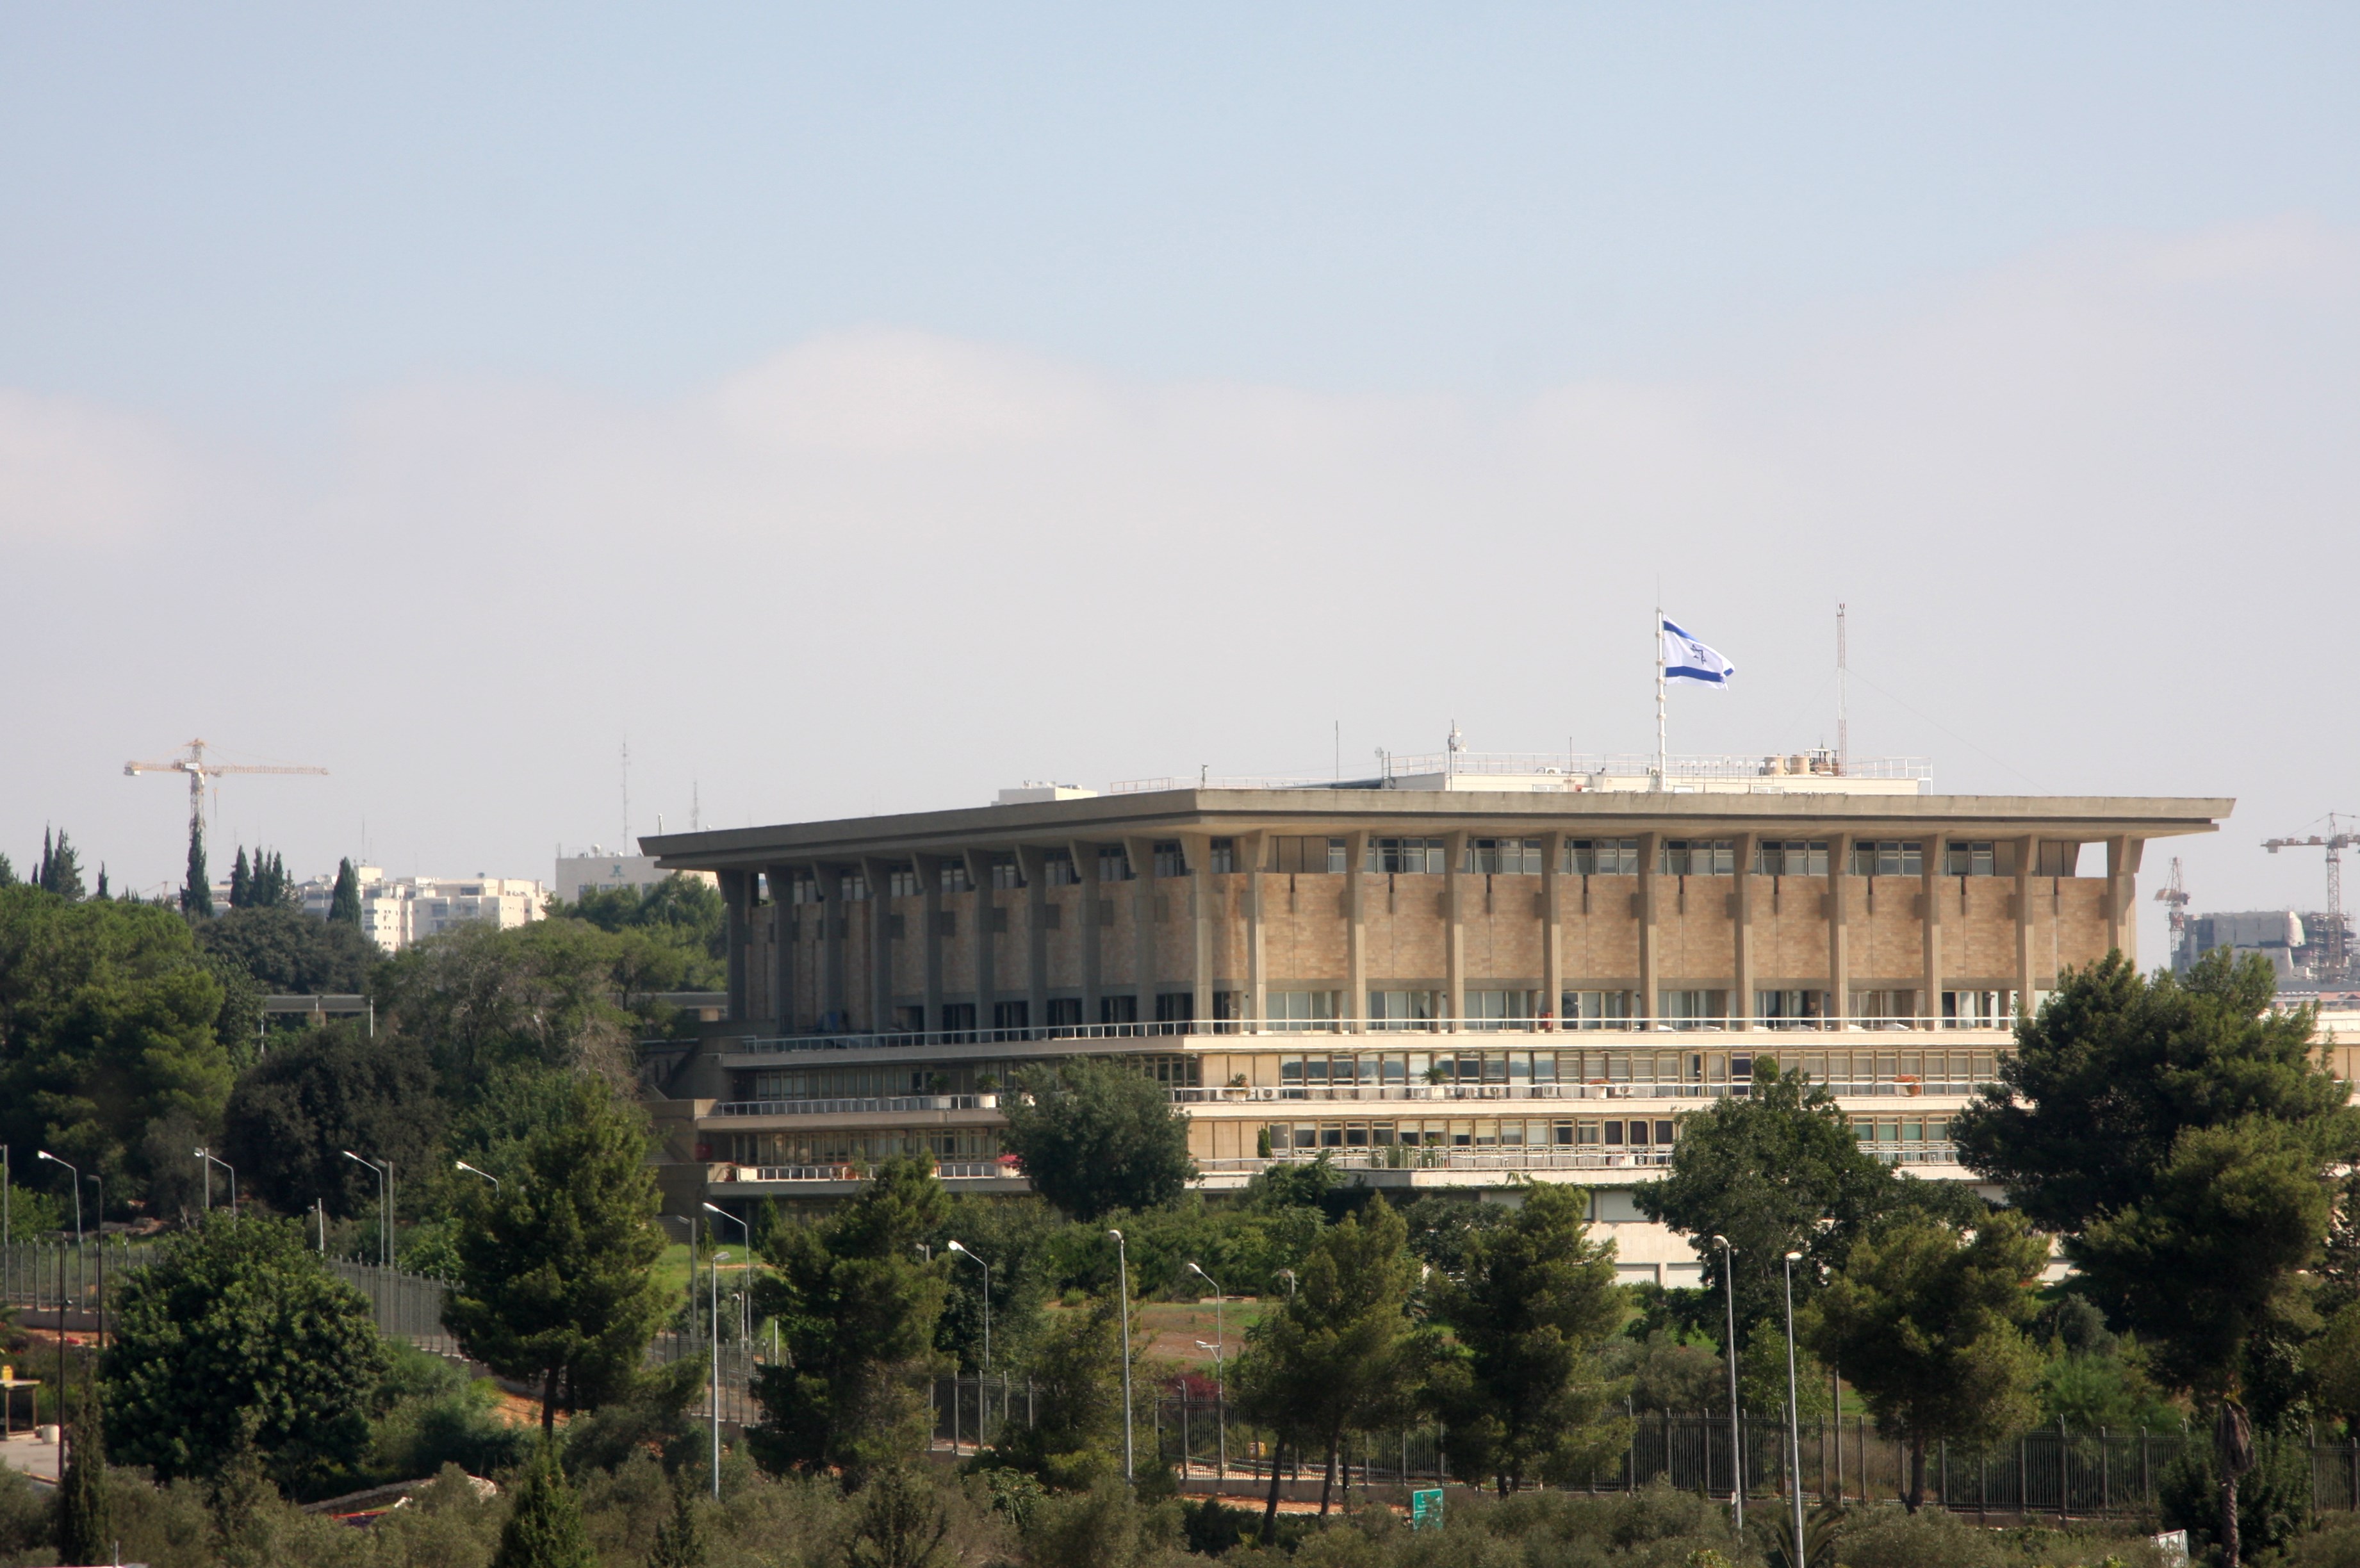 The Israeli Democracy Index 2023